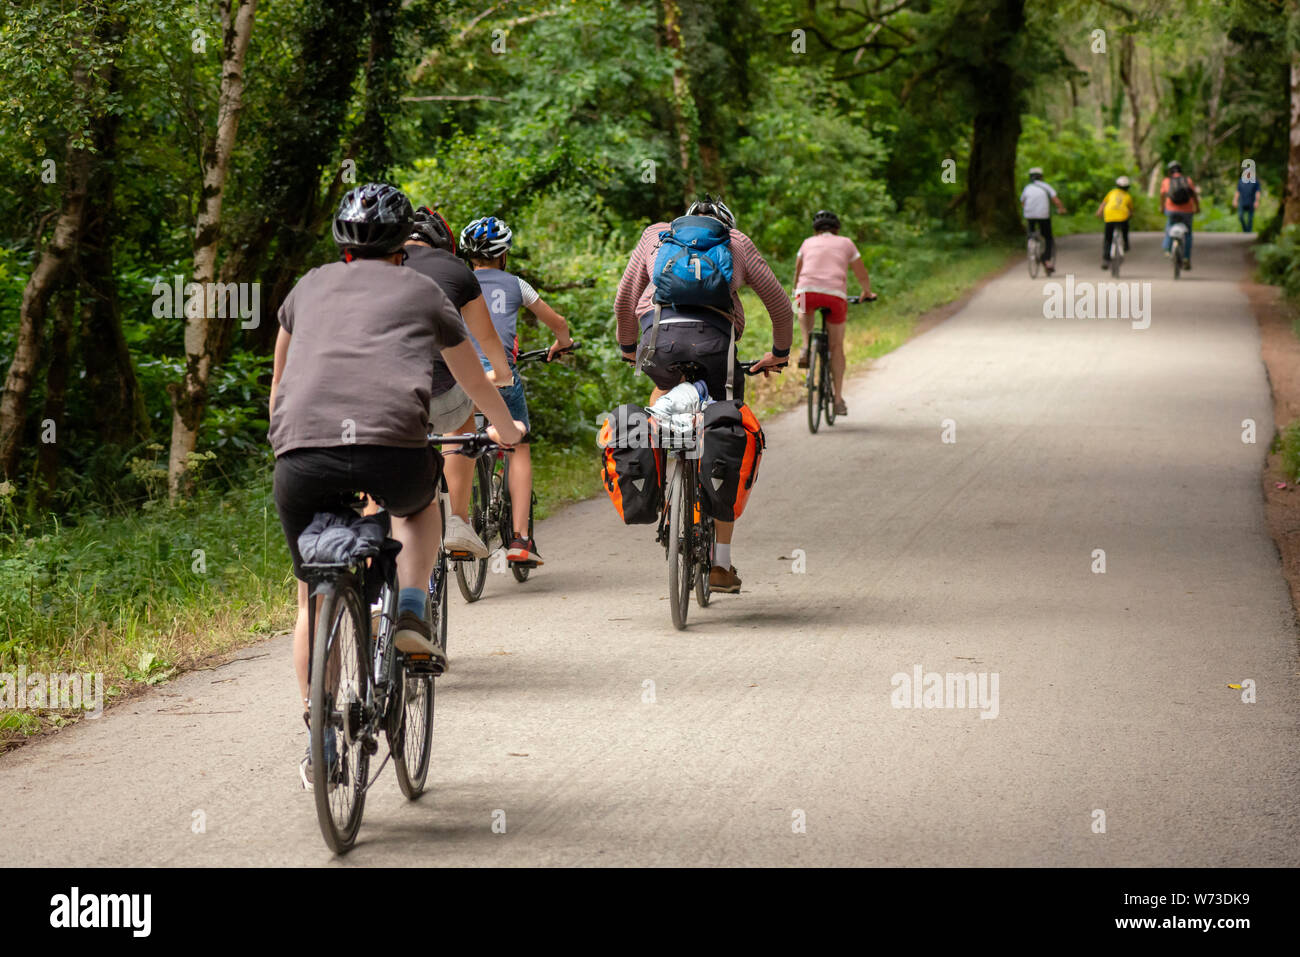 Cyclisme et écotourisme en Irlande. Groupe de touristes avec vélo pédalant sur la ruelle du parc national de Killarney, comté de Kerry, Irlande. Banque D'Images